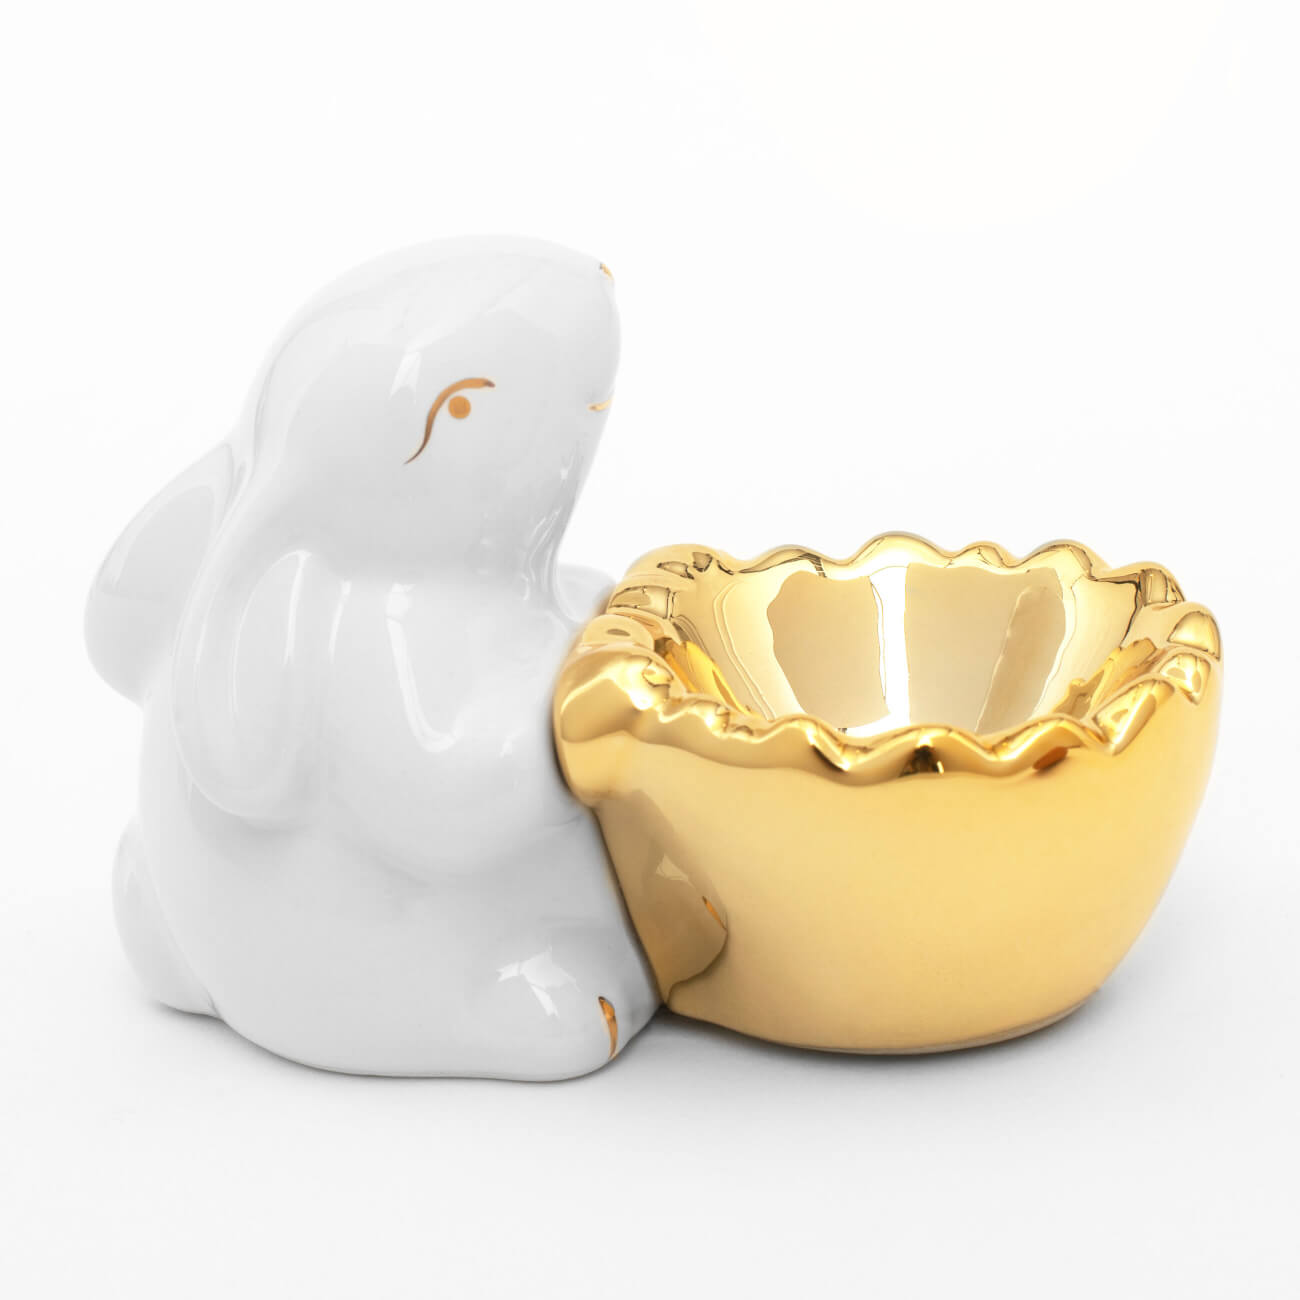 Подставка для яйца, 11 см, керамика, бело-золотистая, Кролик со скорлупой, Easter gold подставка под телефон кролик эйприл айвори